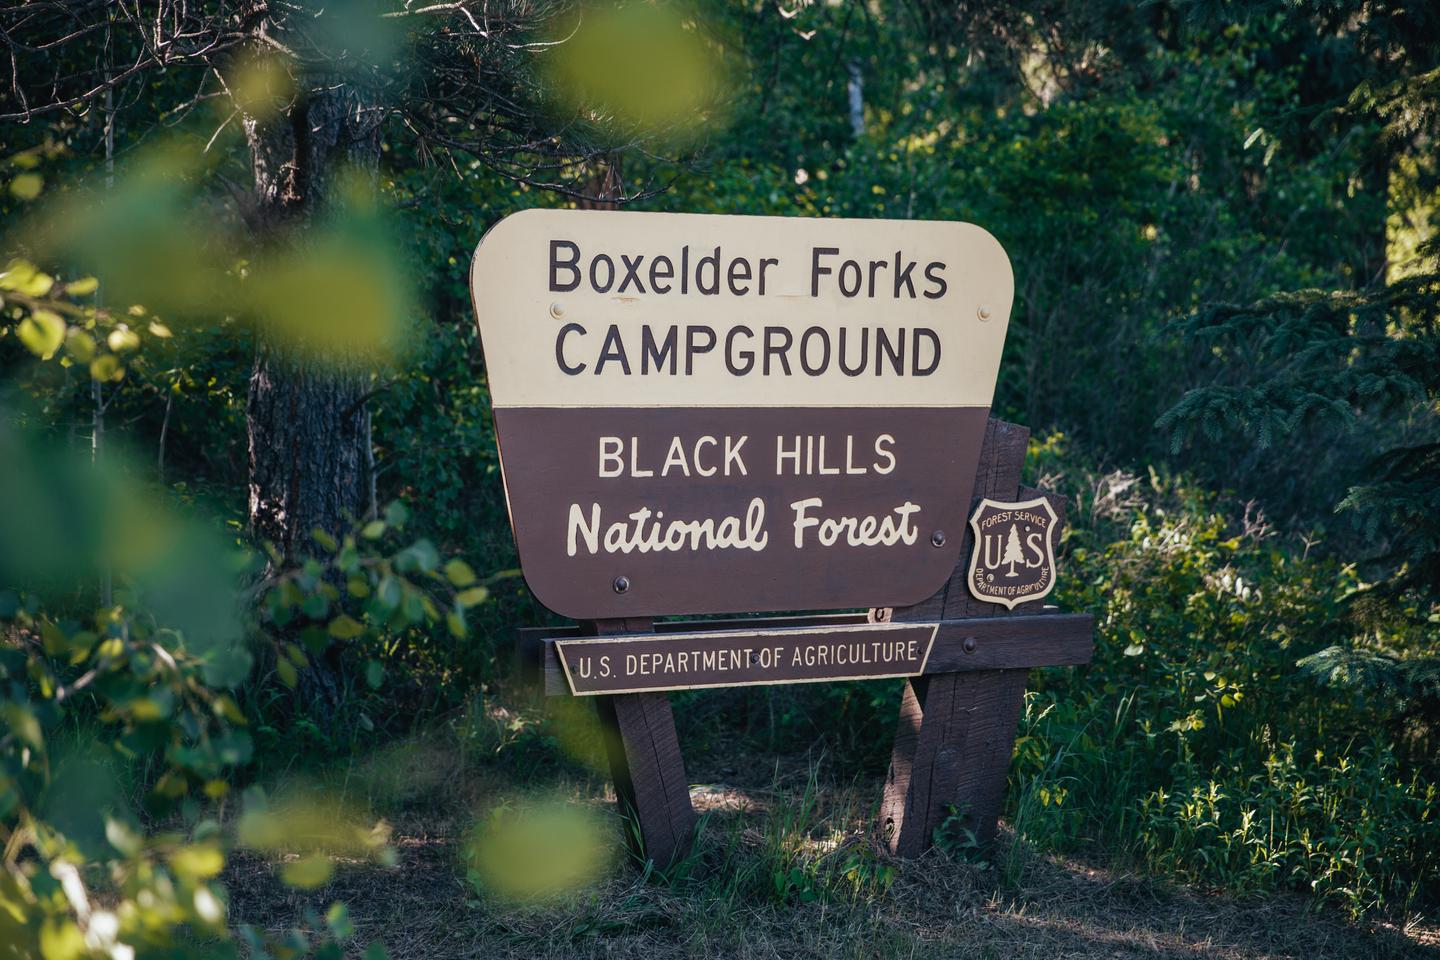 Boxelder Forks EntranceBoxelder Forks Campground Entrance sign